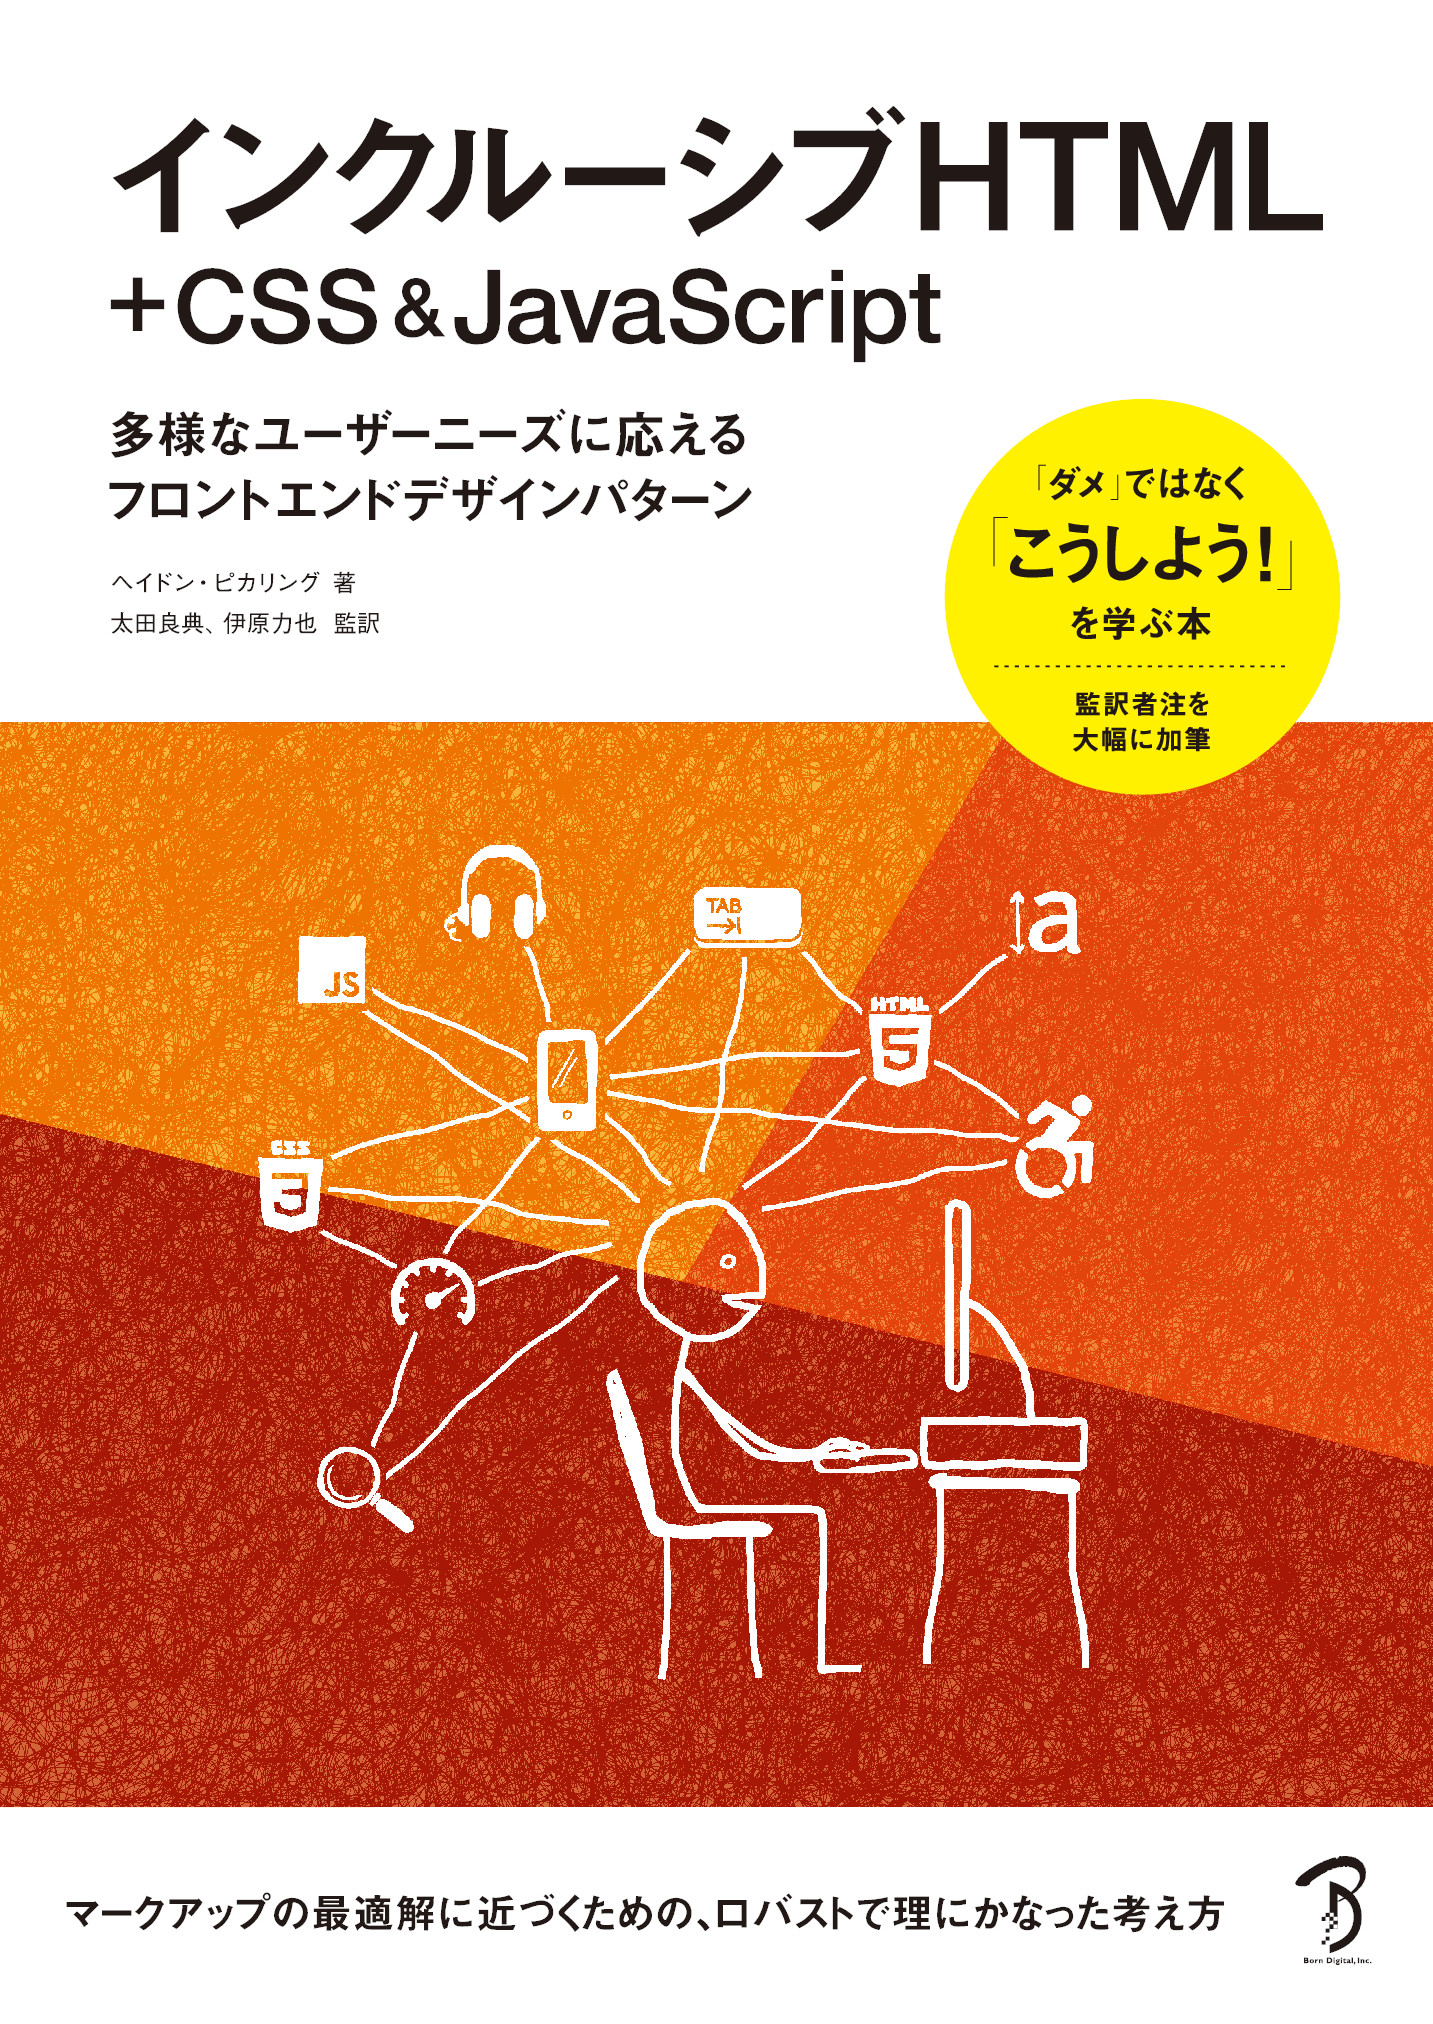 インクルーシブHTML+CSS  JavaScript【委託】 達人出版会